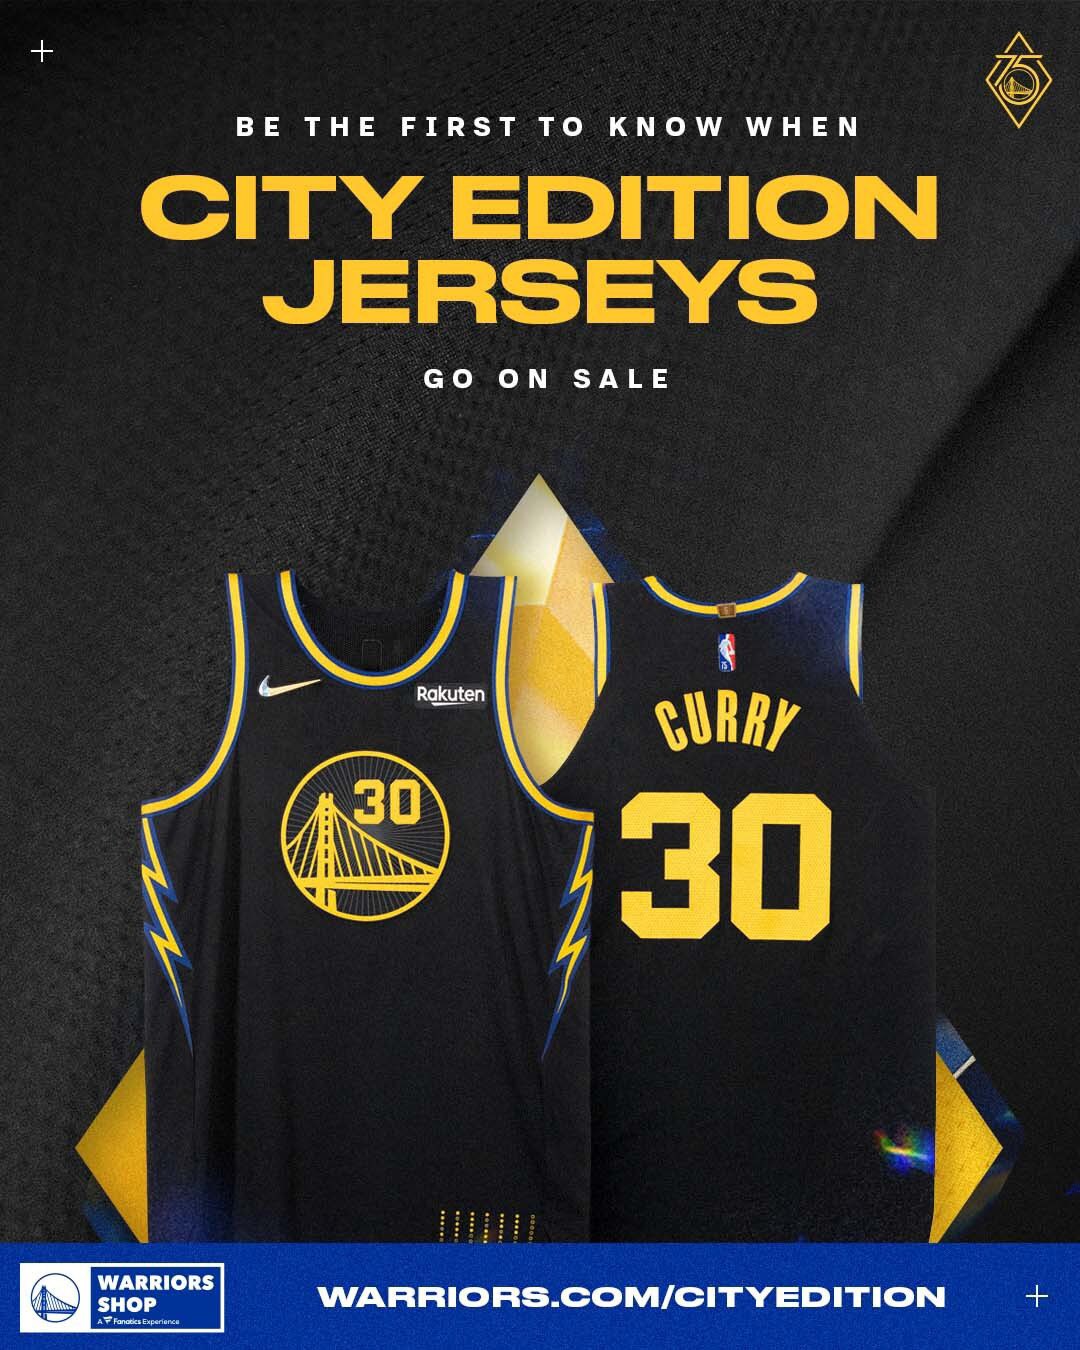 Memphis Grizzlies unveil 2021-22 Nike NBA City Edition uniform